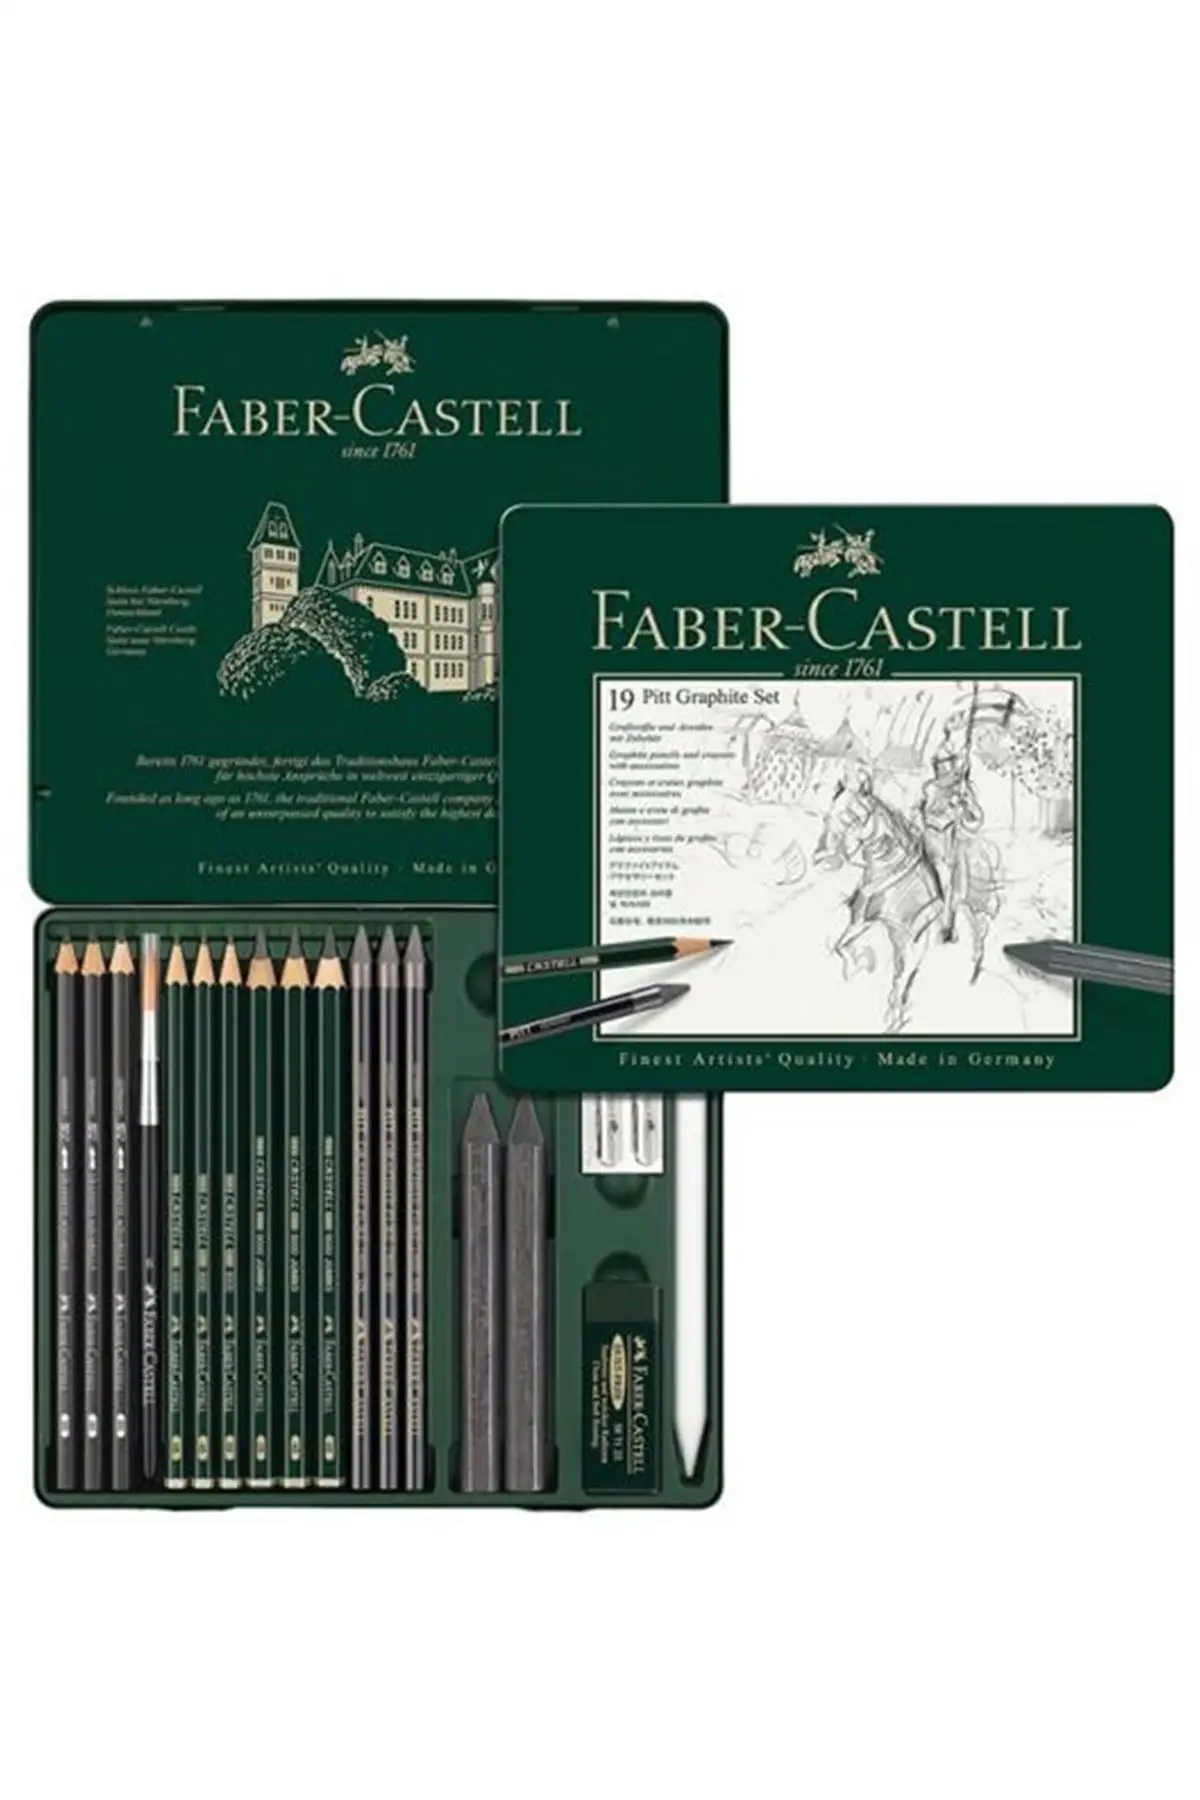 

Бренд: Faber Castell Faber Pitt графитовый набор 19 Lu 8811297300 Категория: мраморный набор